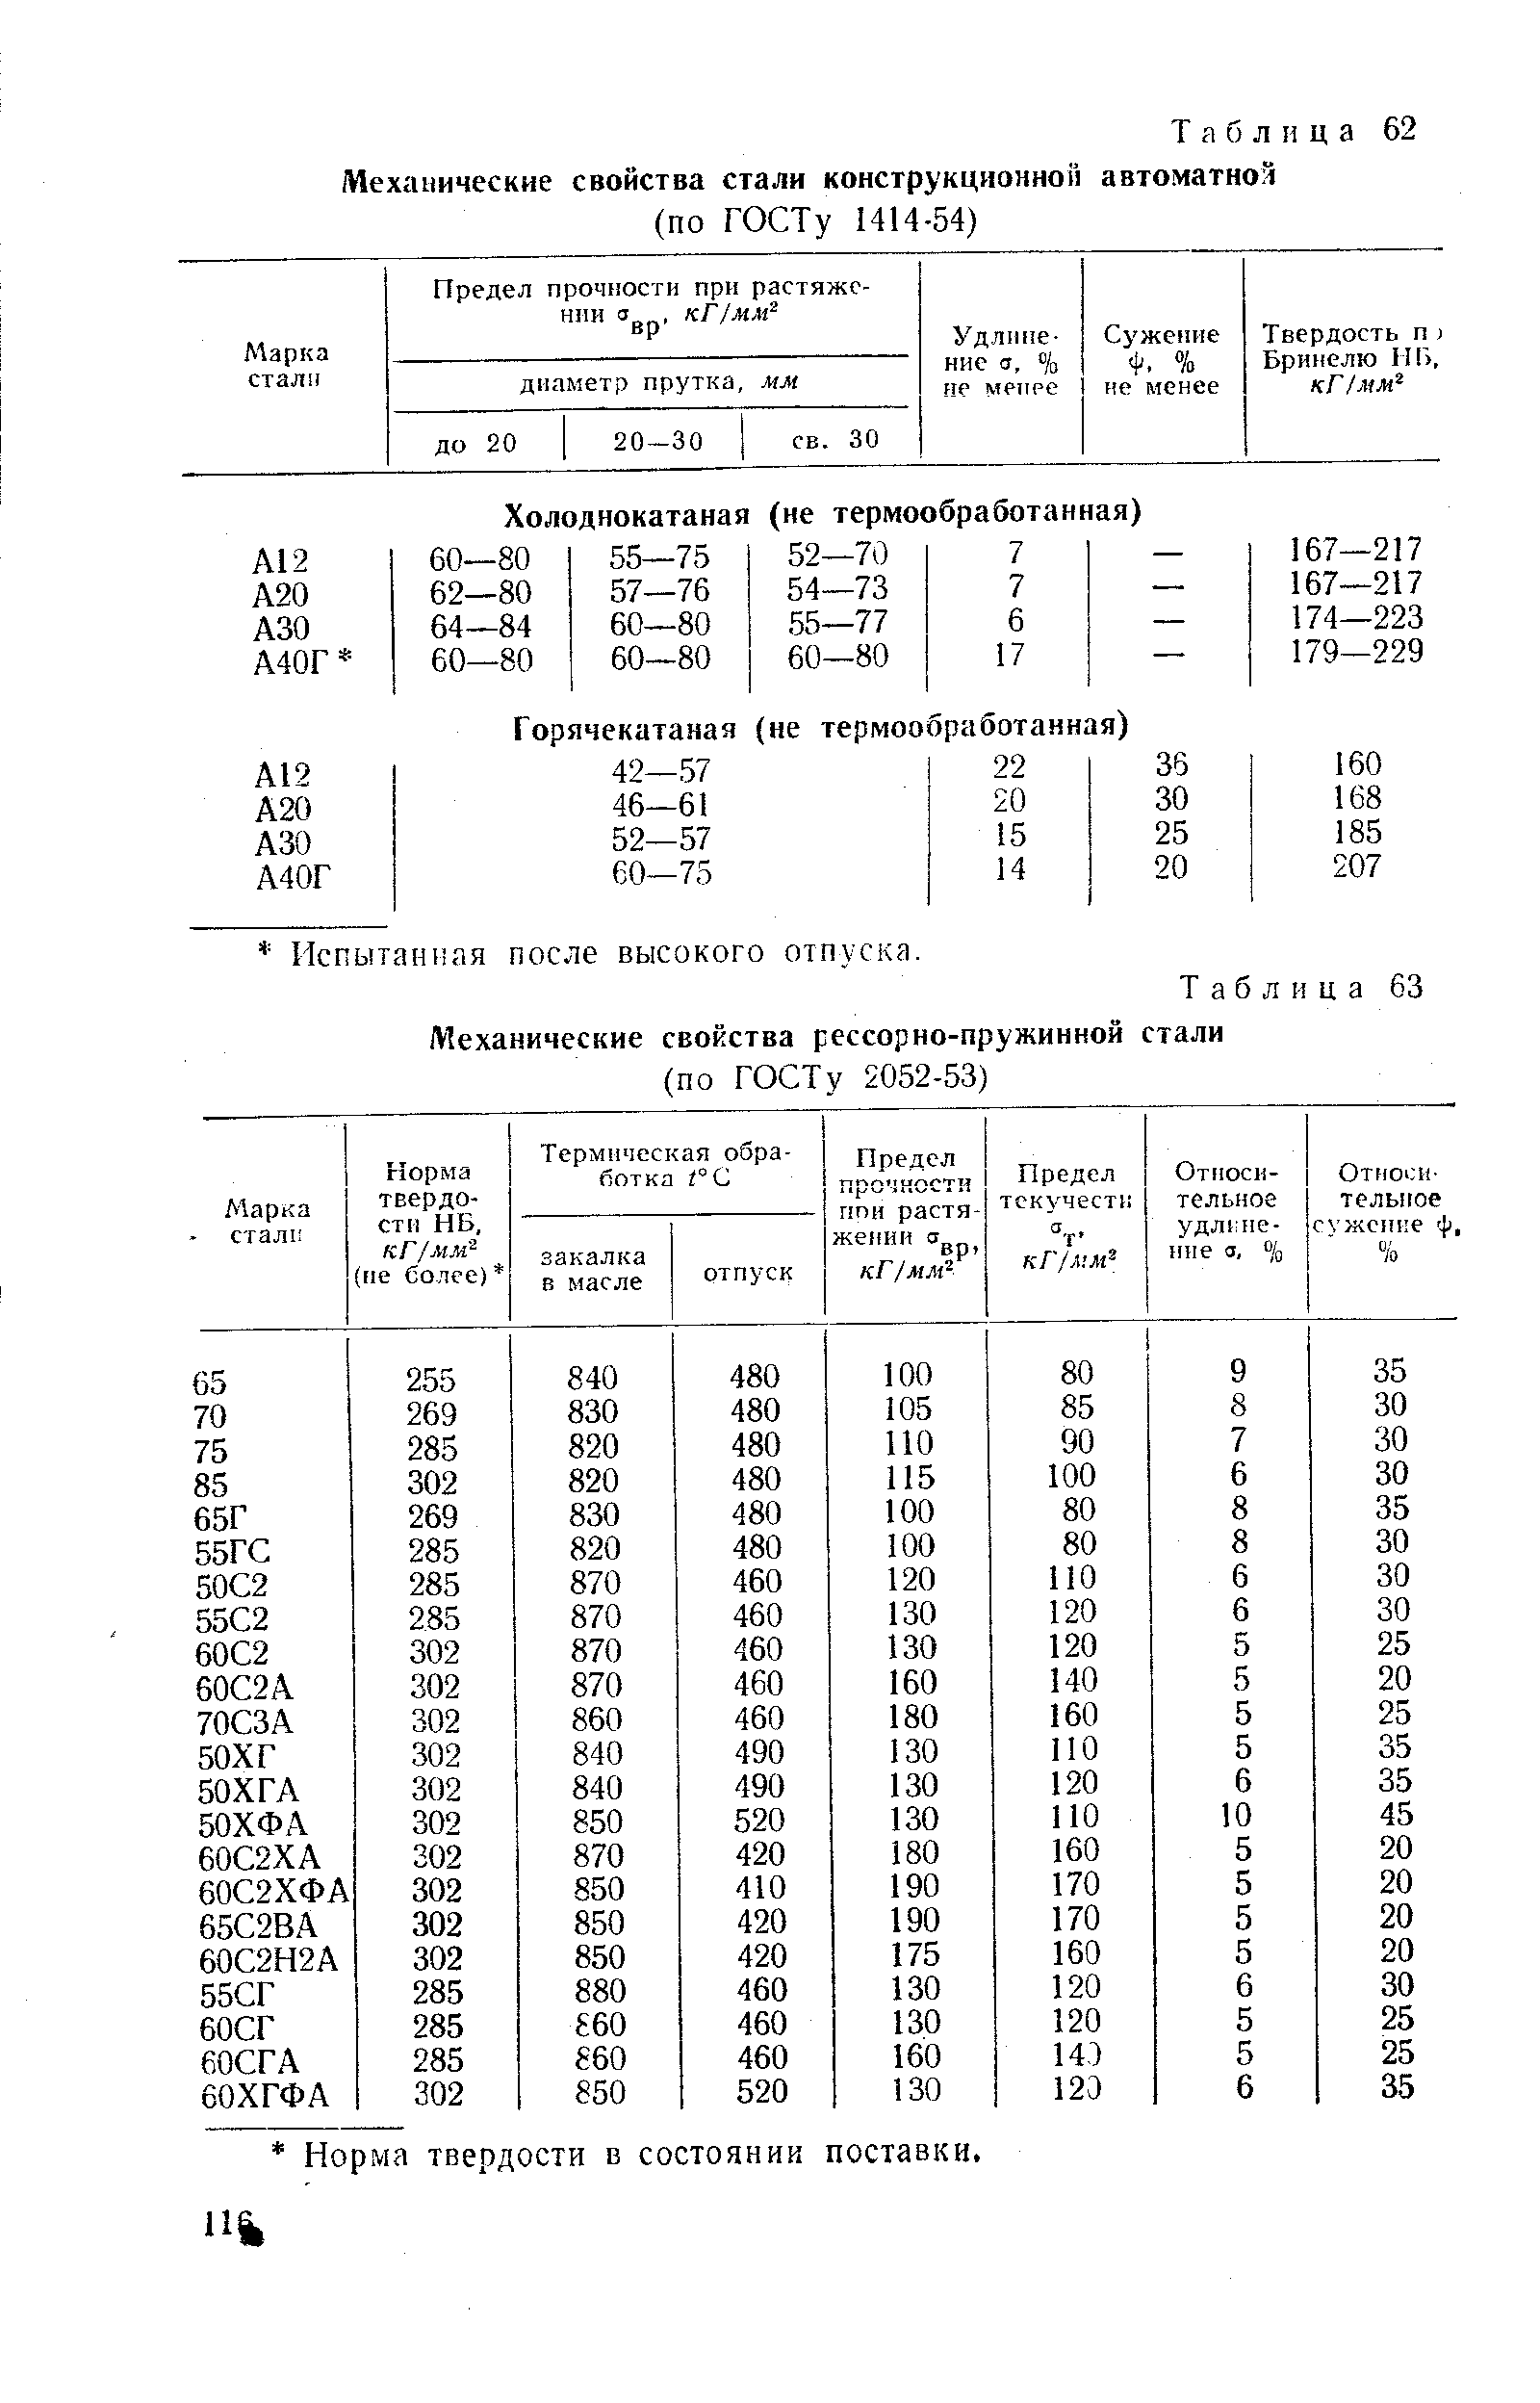 Таблица 63 Механические свойства рессорно-пружинной стали
